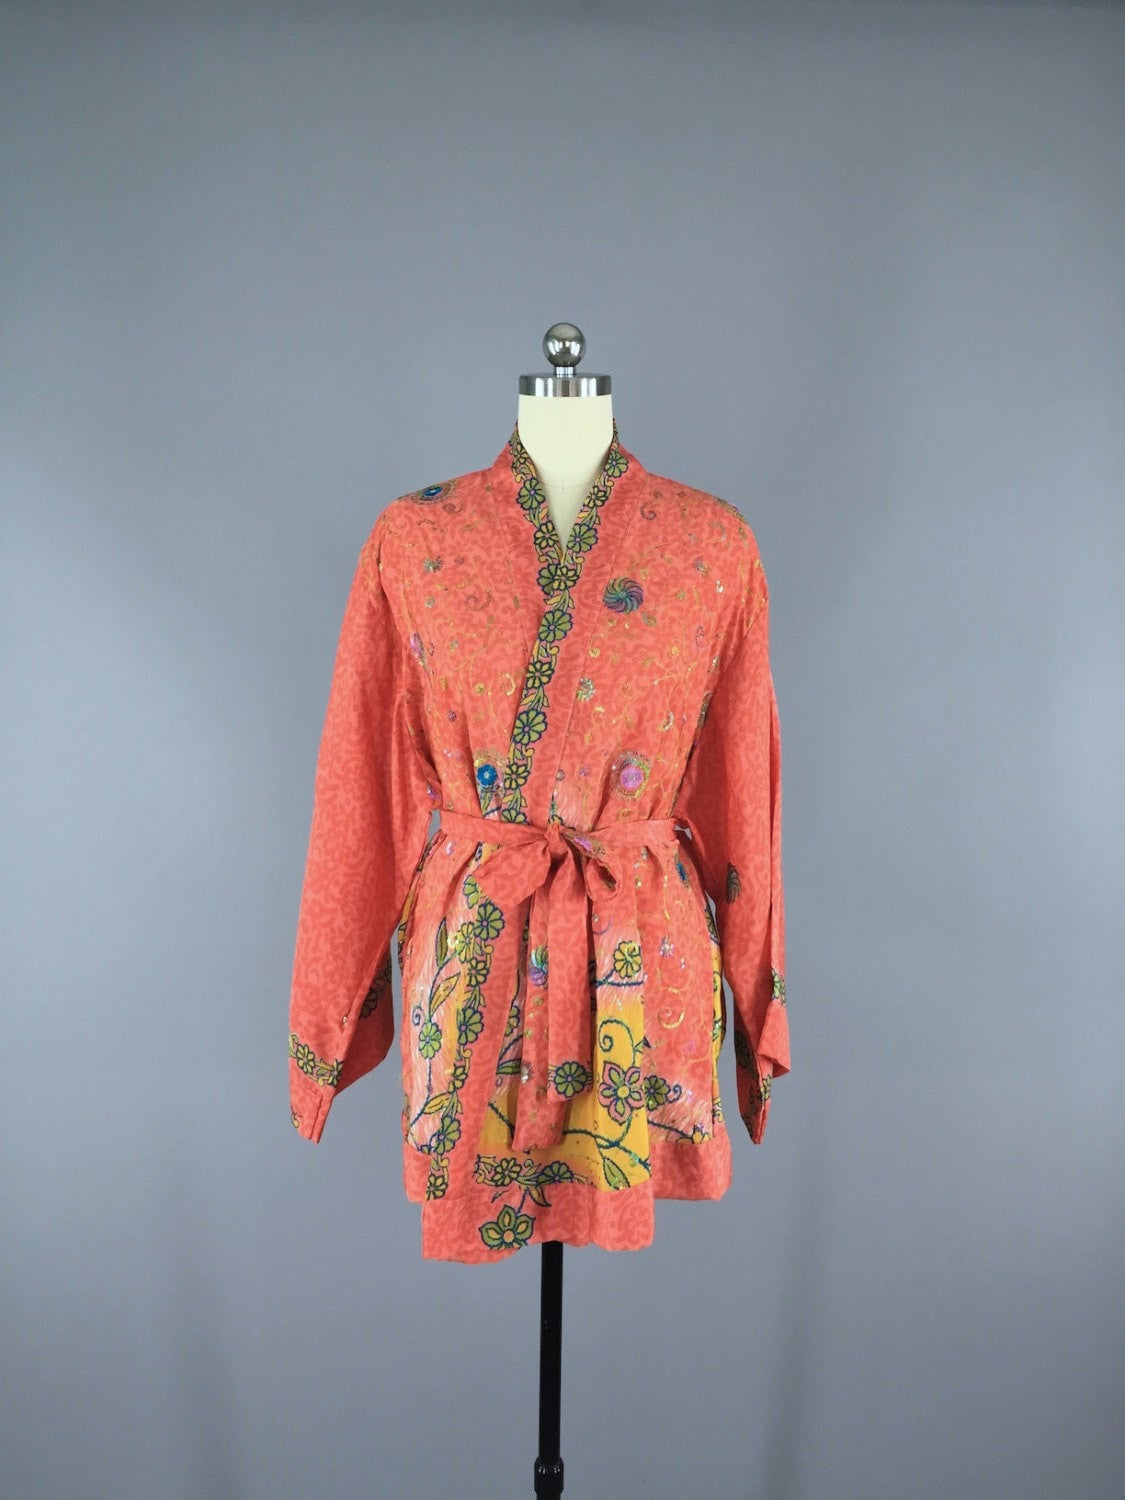 Silk Kimono Cardigan / Vintage Indian Sari / Bohemian Coral Yellow Floral - ThisBlueBird